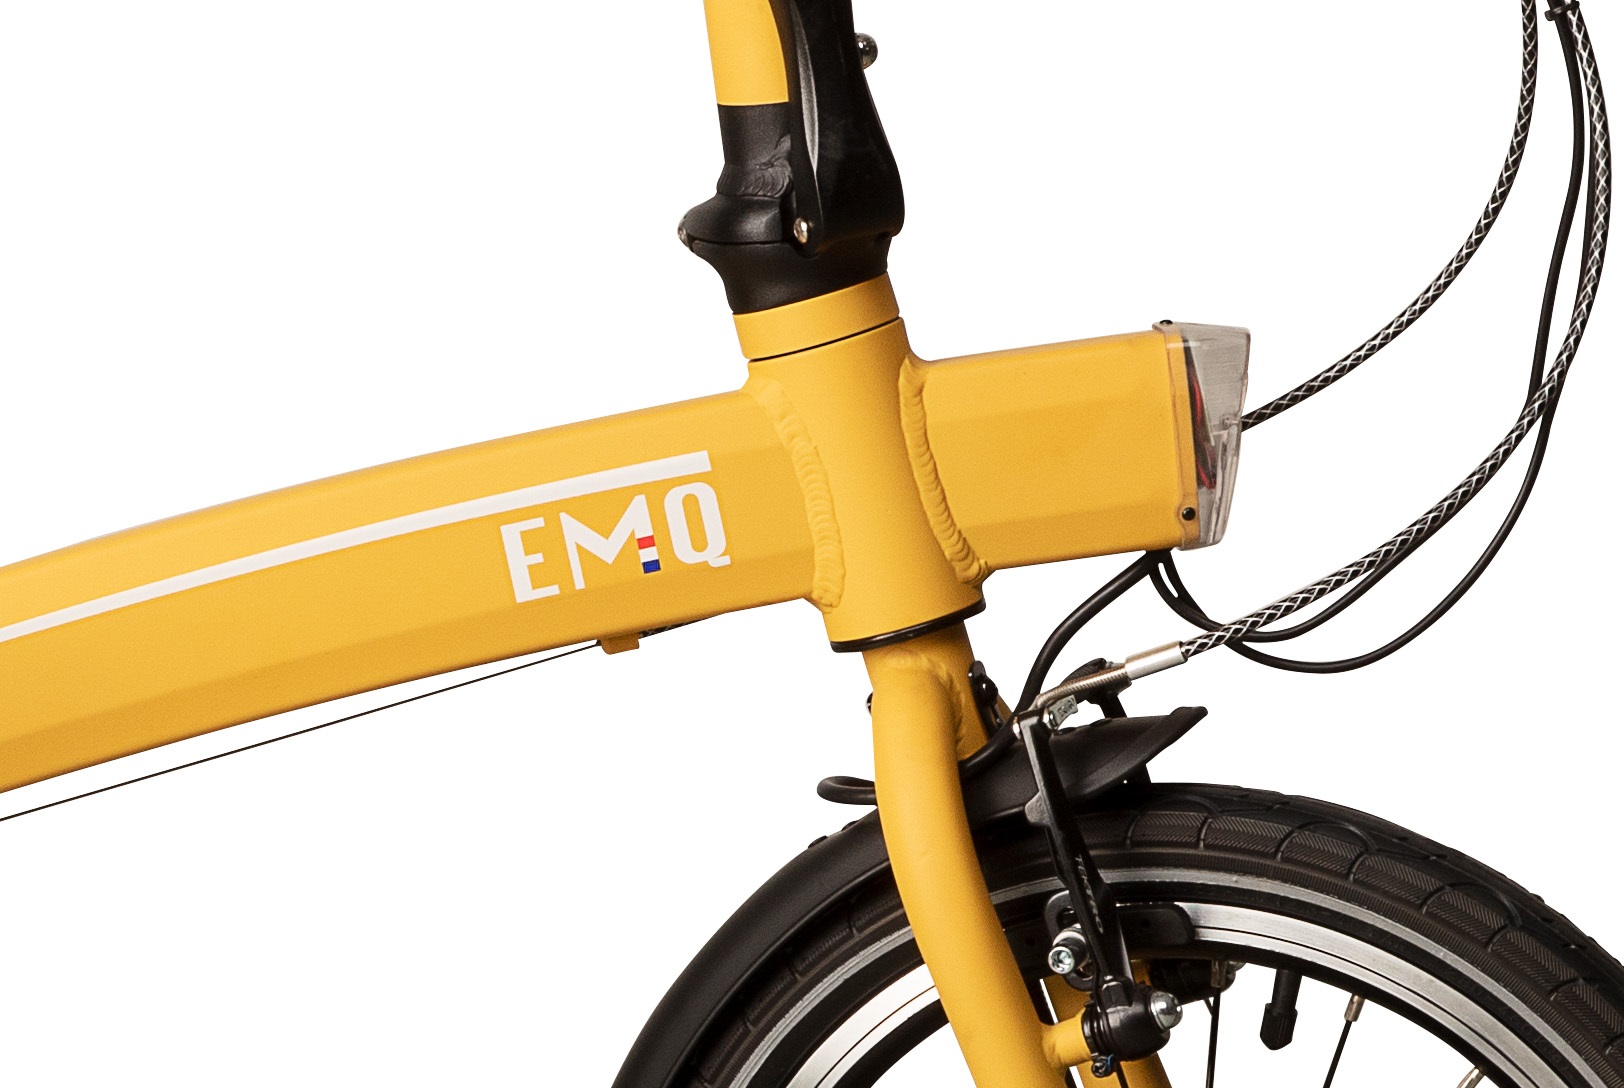 emq elektrische vouwfiets geel